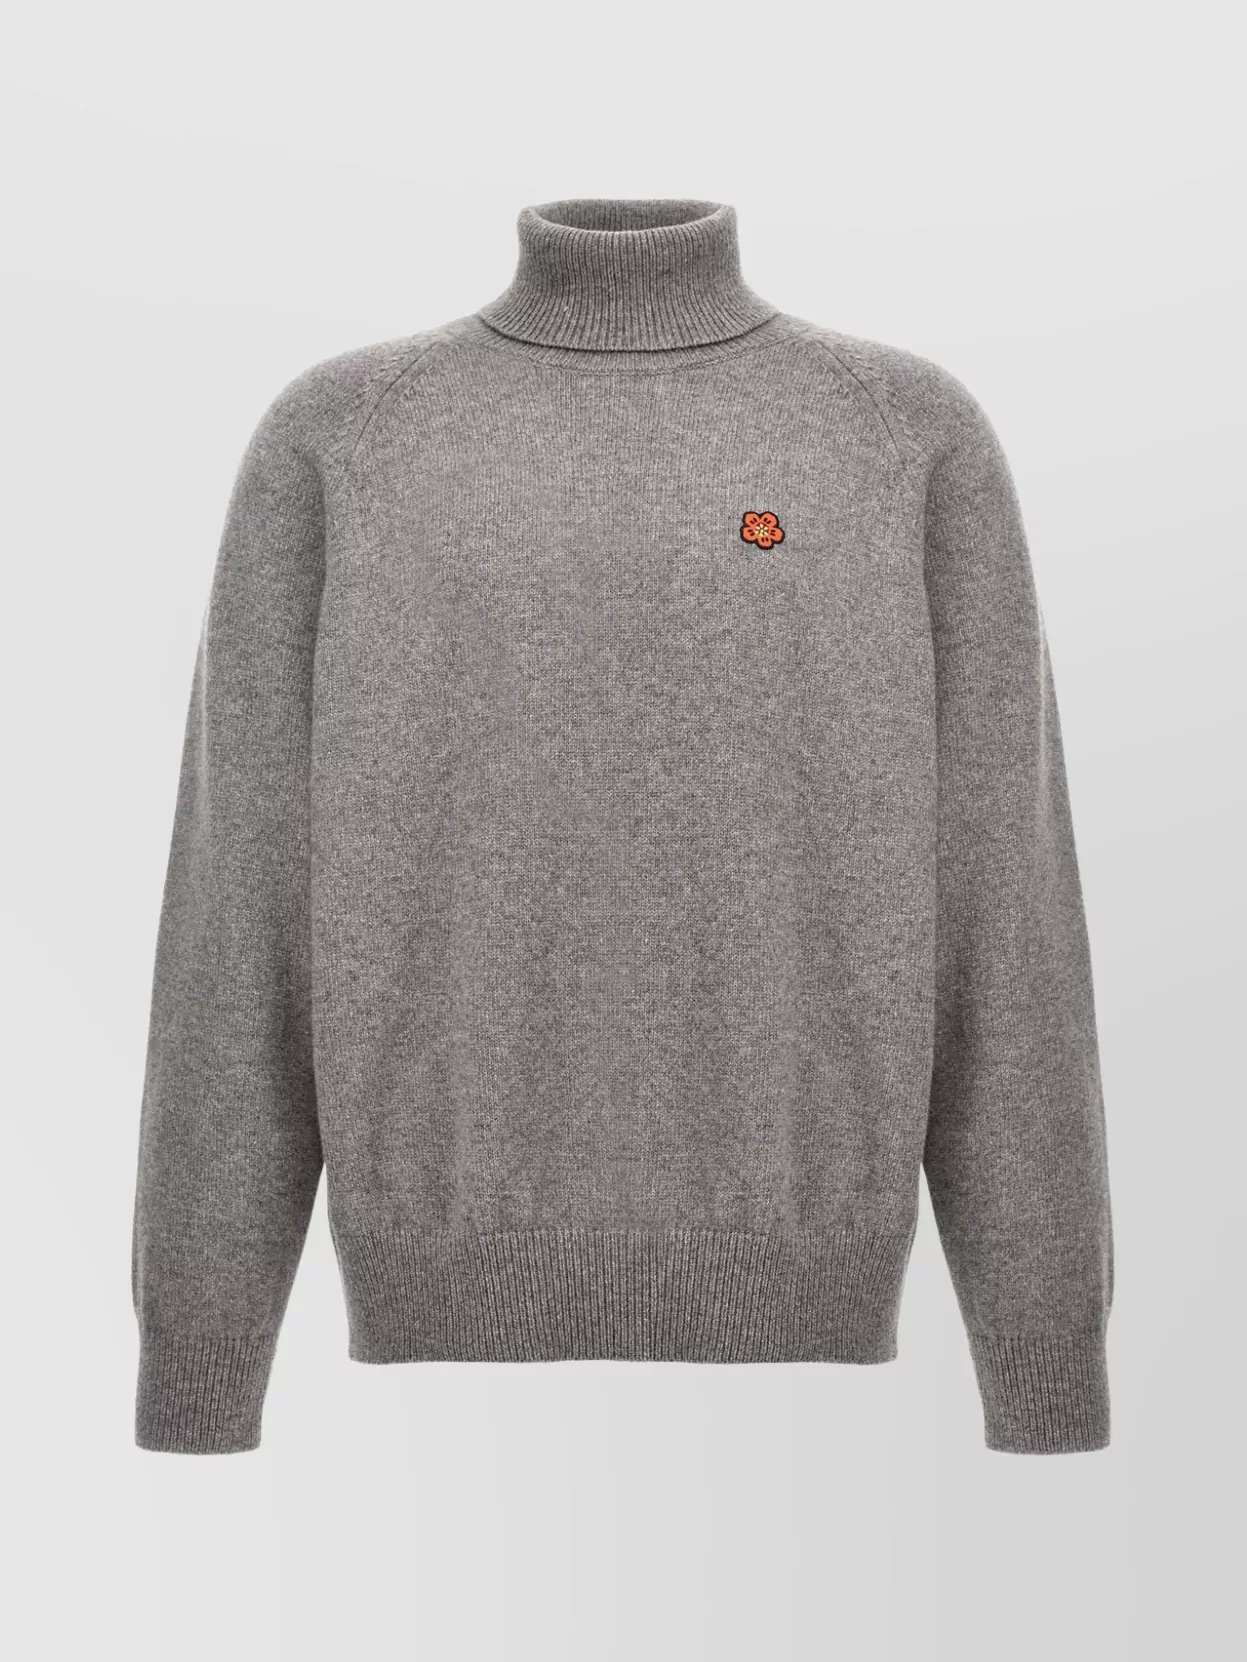 Kenzo 'floral Boke' Turtleneck Sweater In Gray